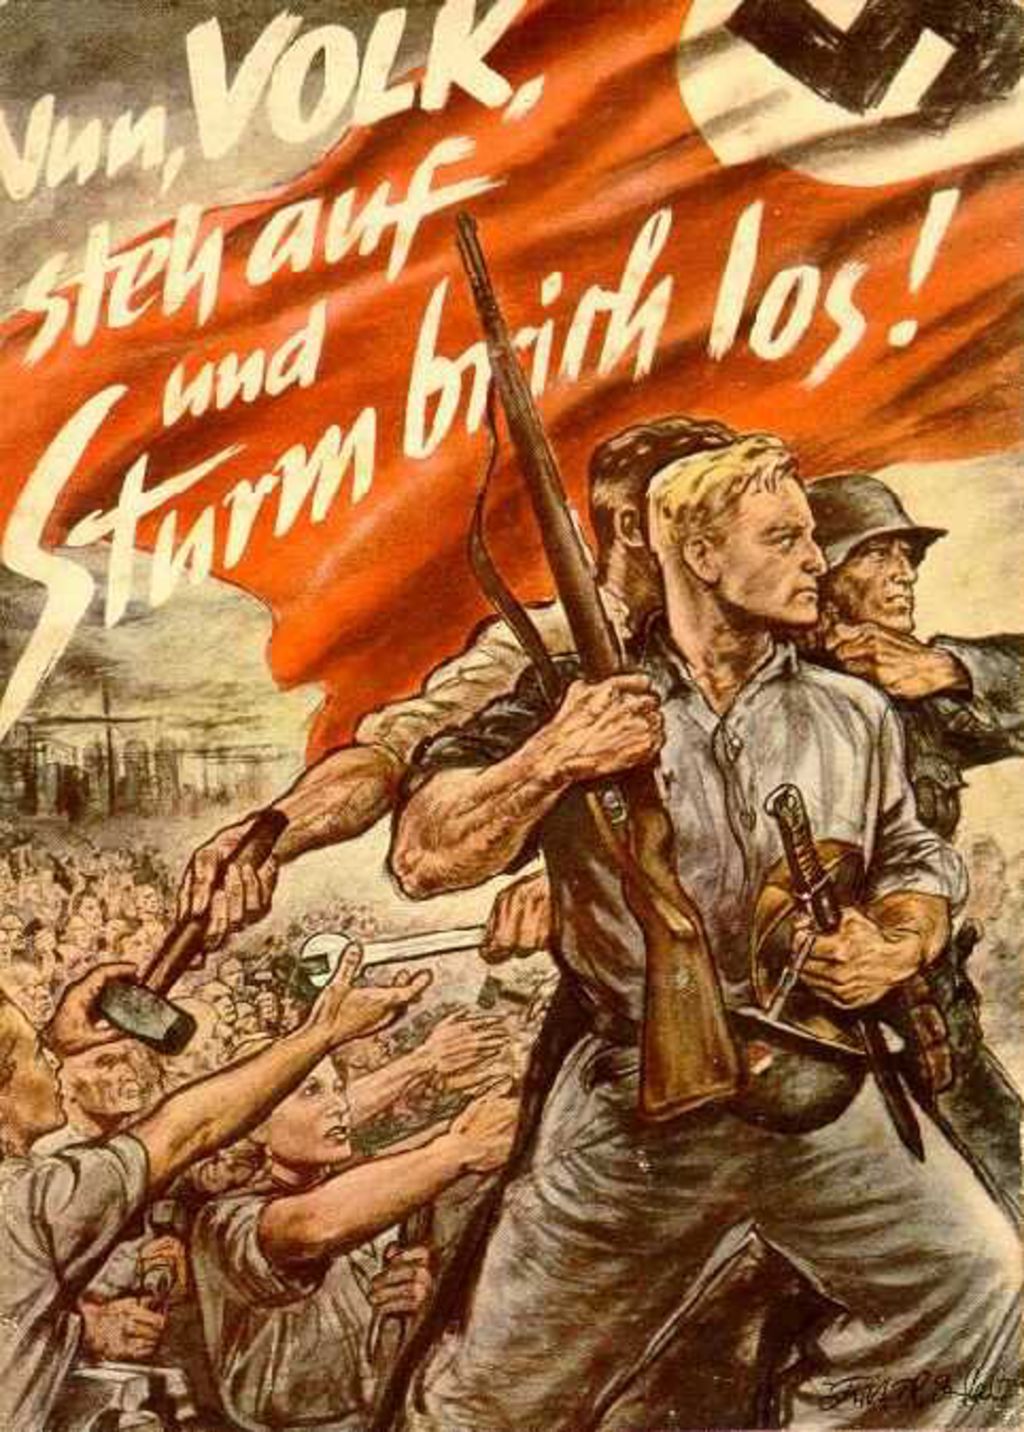 Exponat: Broschüre: "Nun, Volk, steh auf und Sturm brich los", 1943